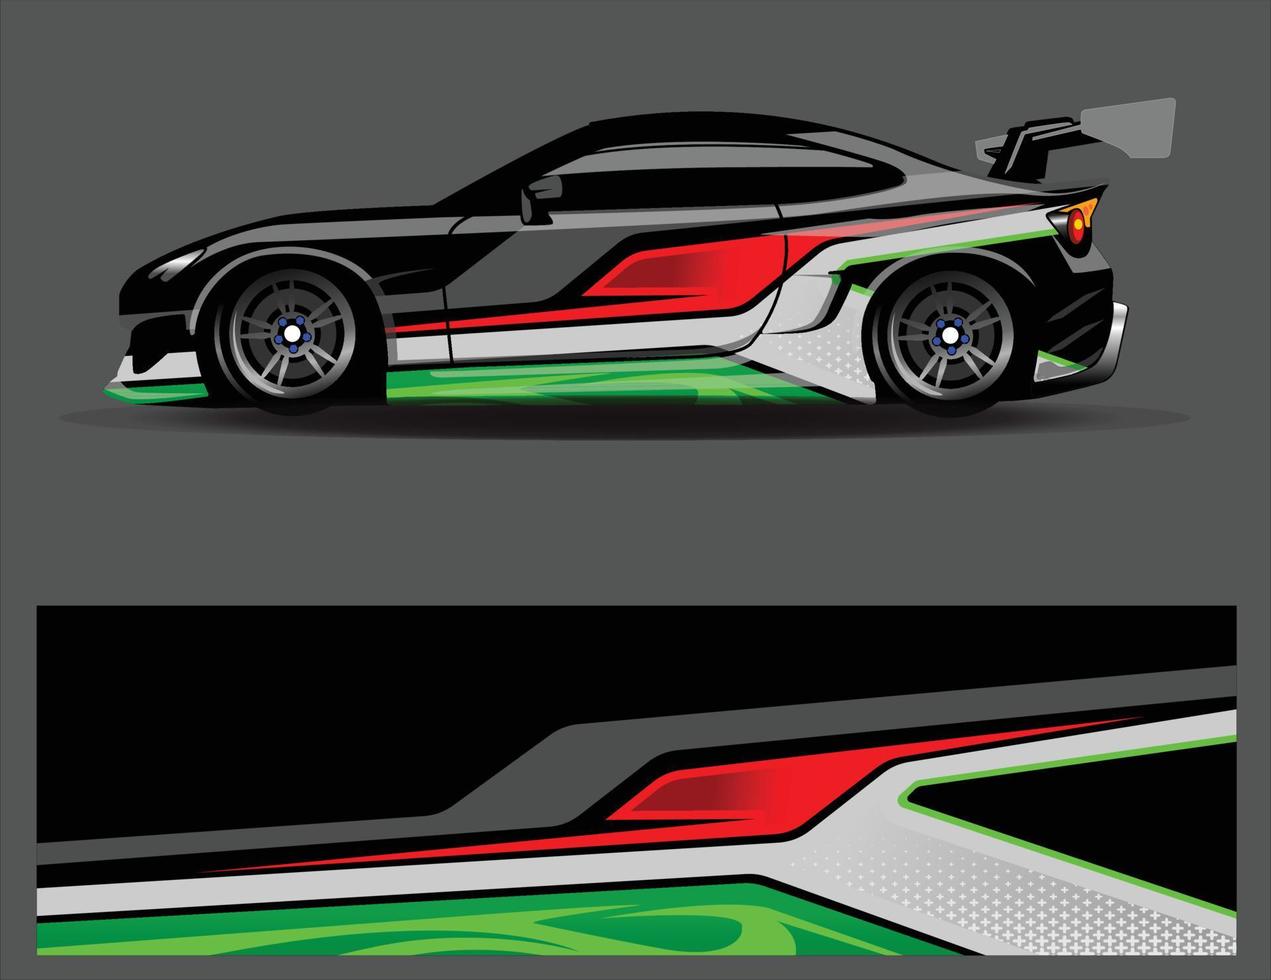 disegni di sfondo di corse a strisce astratte grafiche per l'avventura di corse di rally di veicoli e livrea di corse automobilistiche vettore